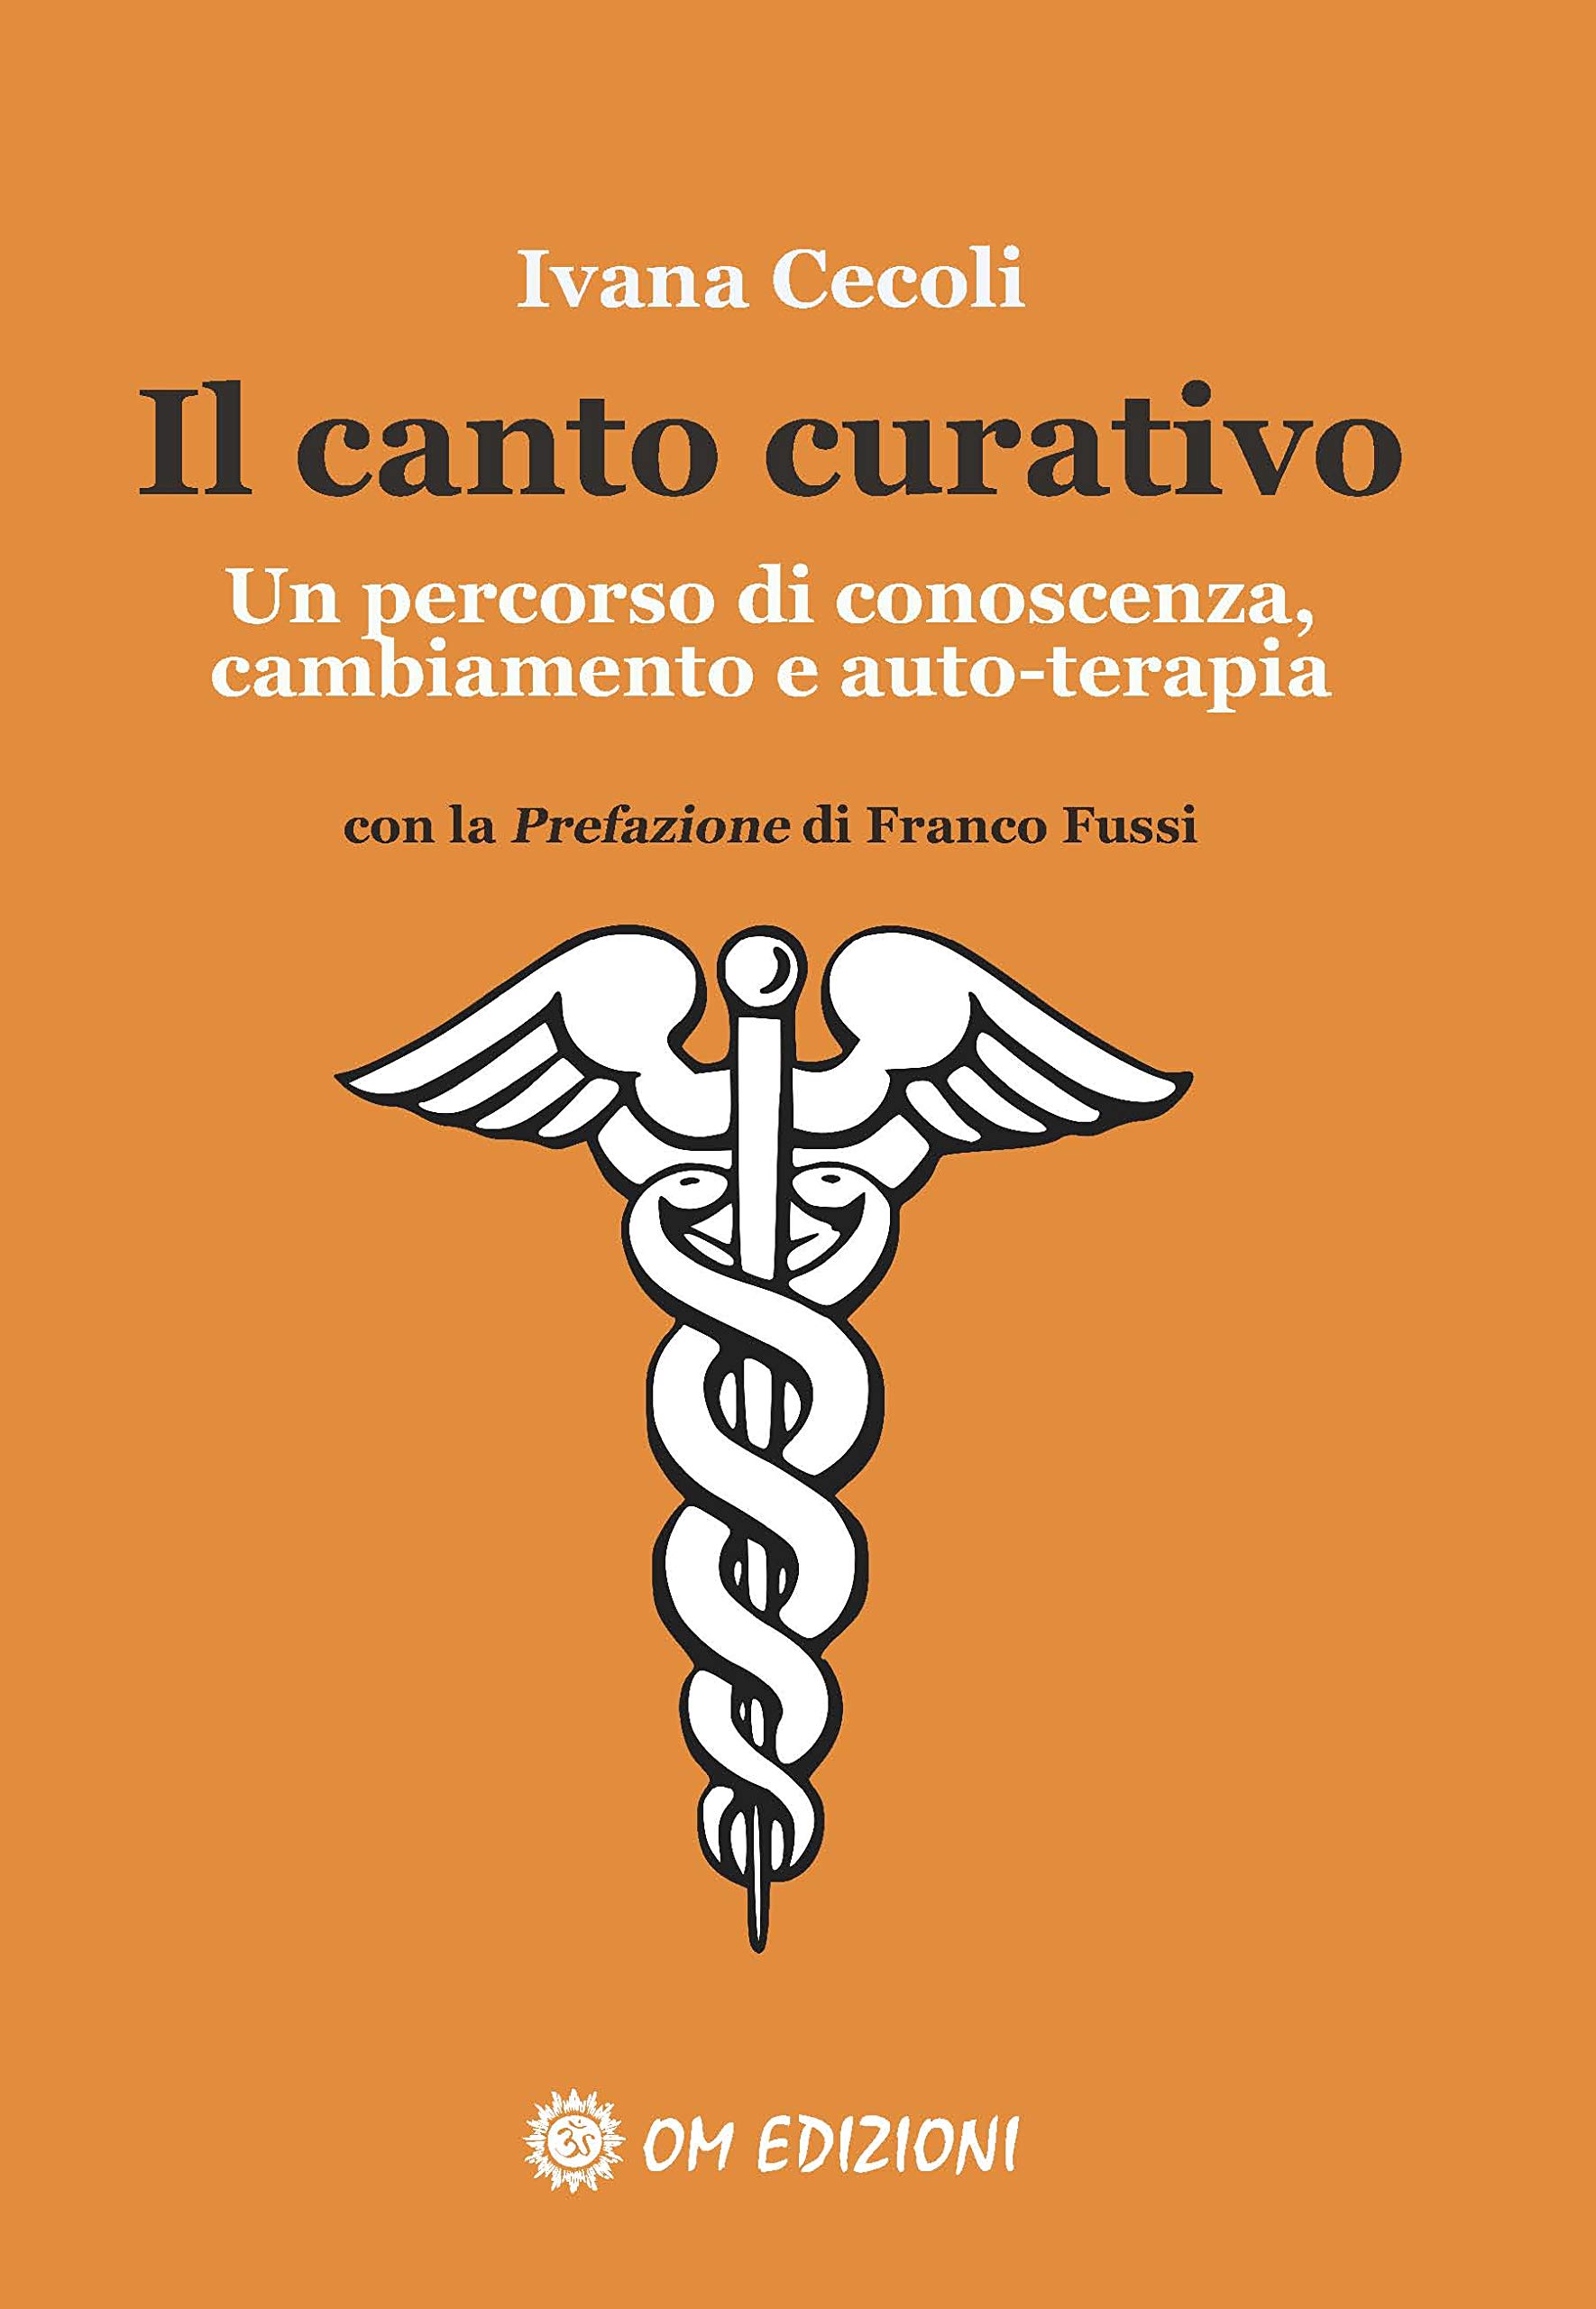 ivanacecoli.it_portfolio_libro_il-canto-curativo_fronte